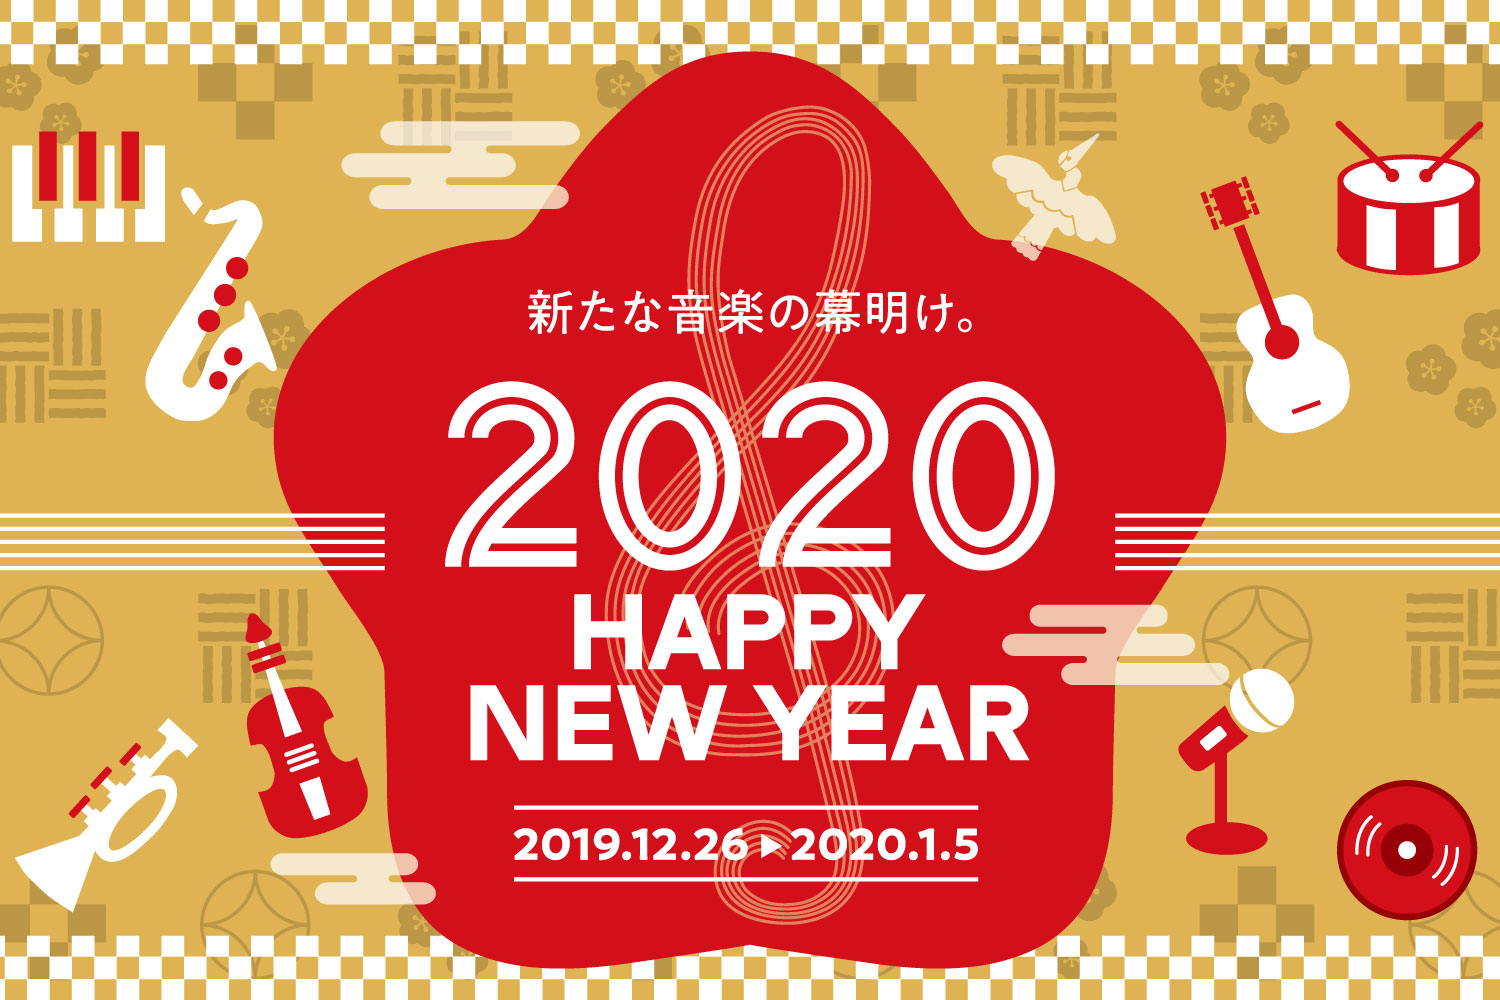 【電子ピアノ】HAPPY MUSIC NEW YEAR 2020